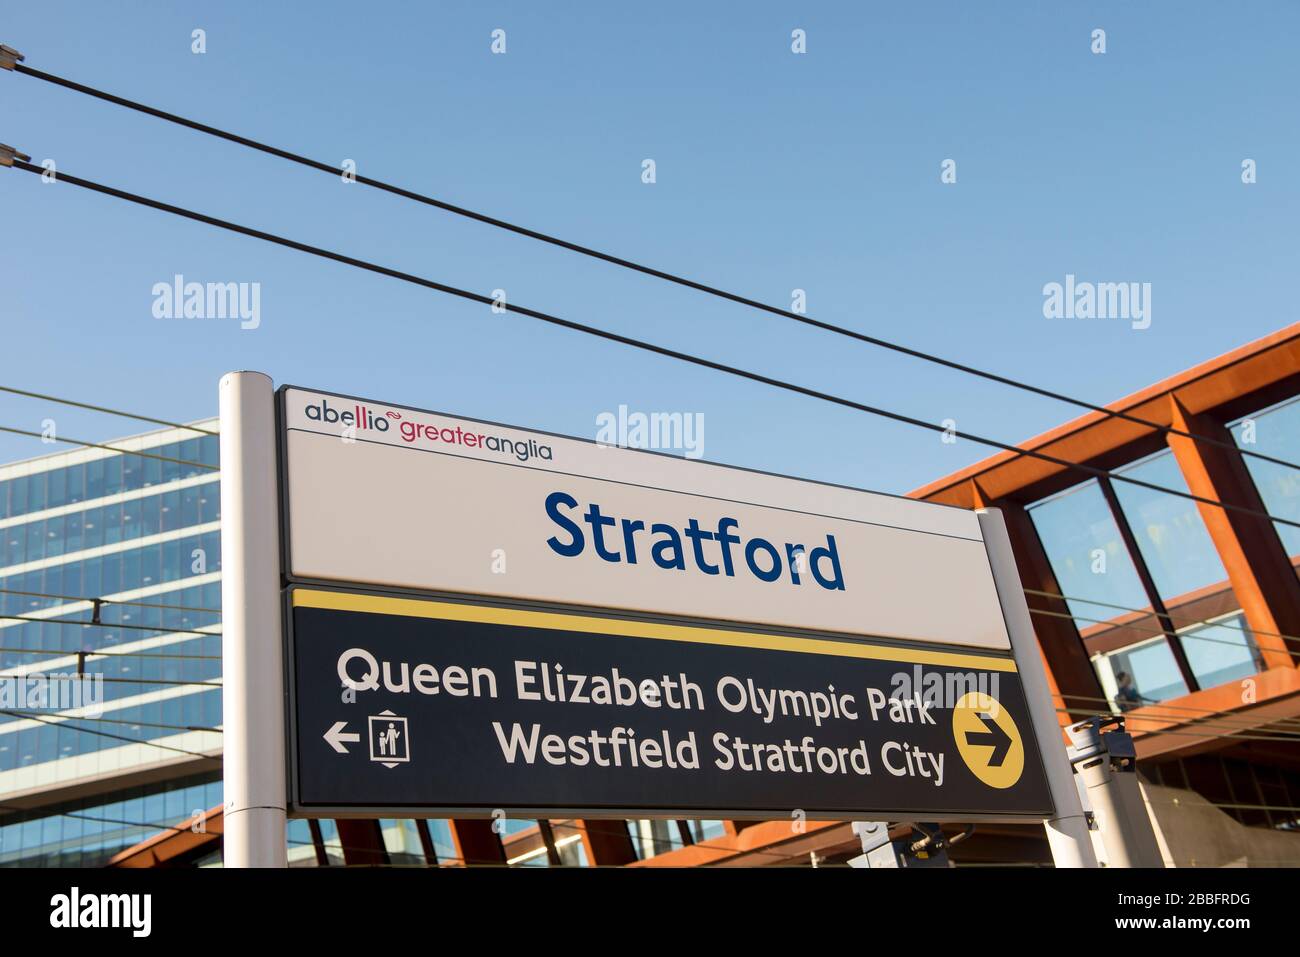 Señalización de la plataforma Estación de tren de Stratford con direcciones a Westfield Shopping Center y Queen Elizabeth Olympic Park durante el día soleado y despejado Foto de stock